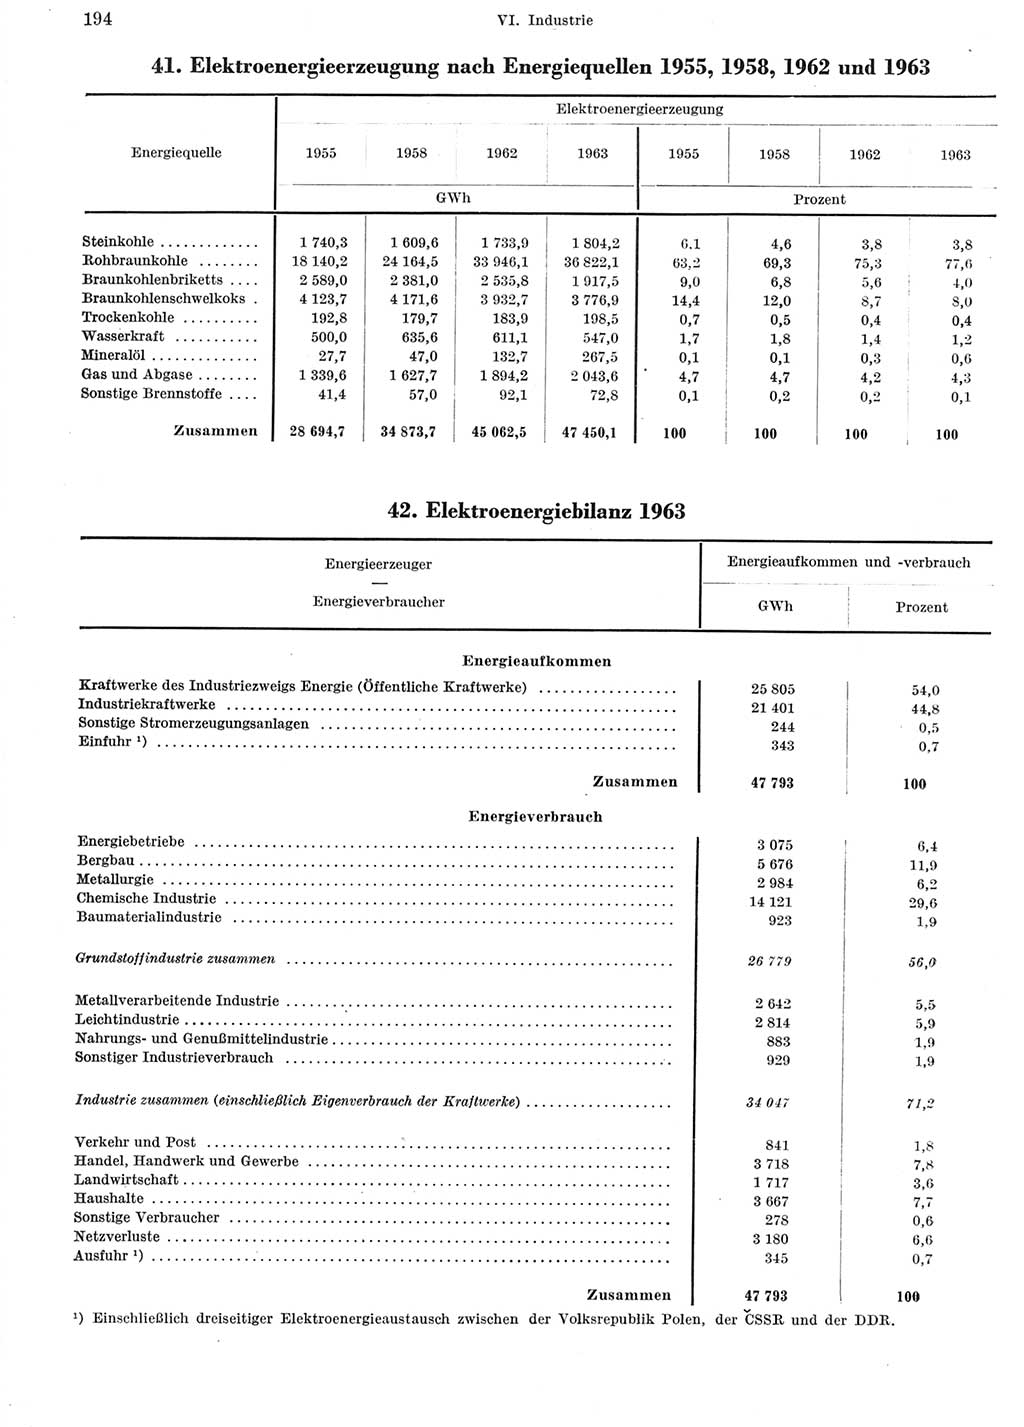 Statistisches Jahrbuch der Deutschen Demokratischen Republik (DDR) 1964, Seite 194 (Stat. Jb. DDR 1964, S. 194)